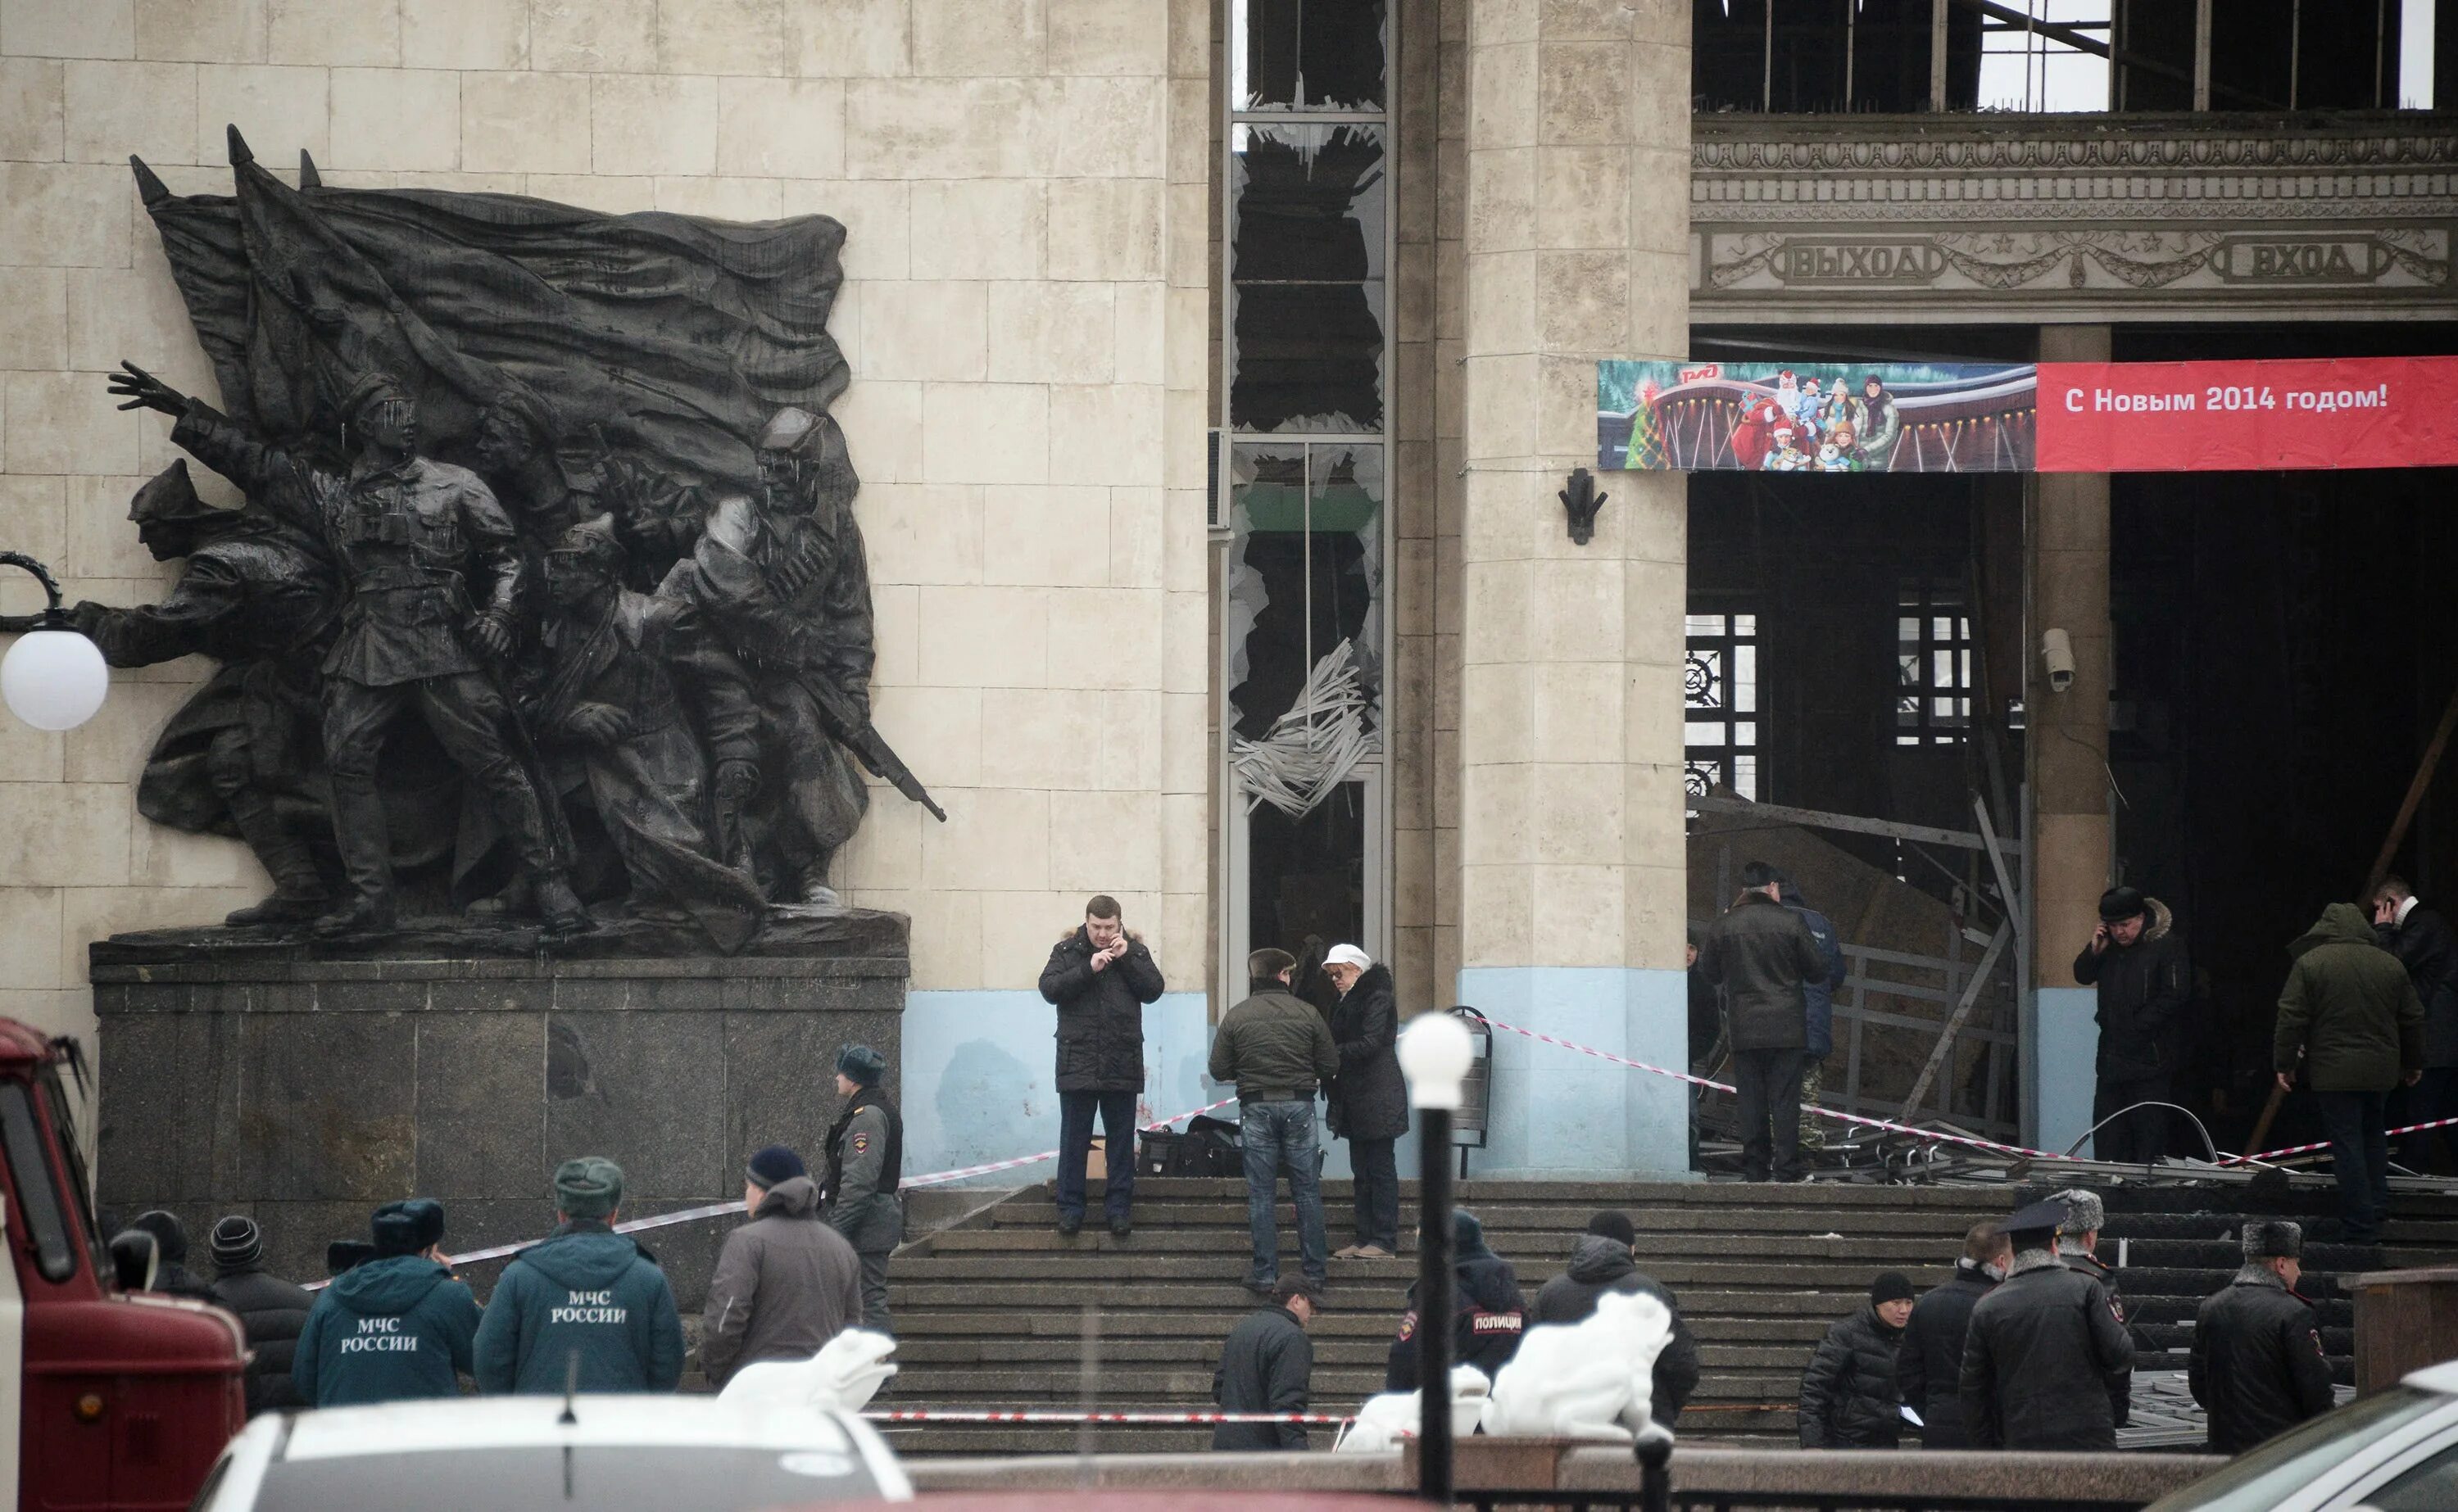 Теракт в Волгограде вокзал. Взрыв вокзала в Волгограде 2013. Волгоград 1 Железнодорожный вокзал взрыв. 29 Декабря 2013 года теракт в Волгограде. Теракт в пятницу